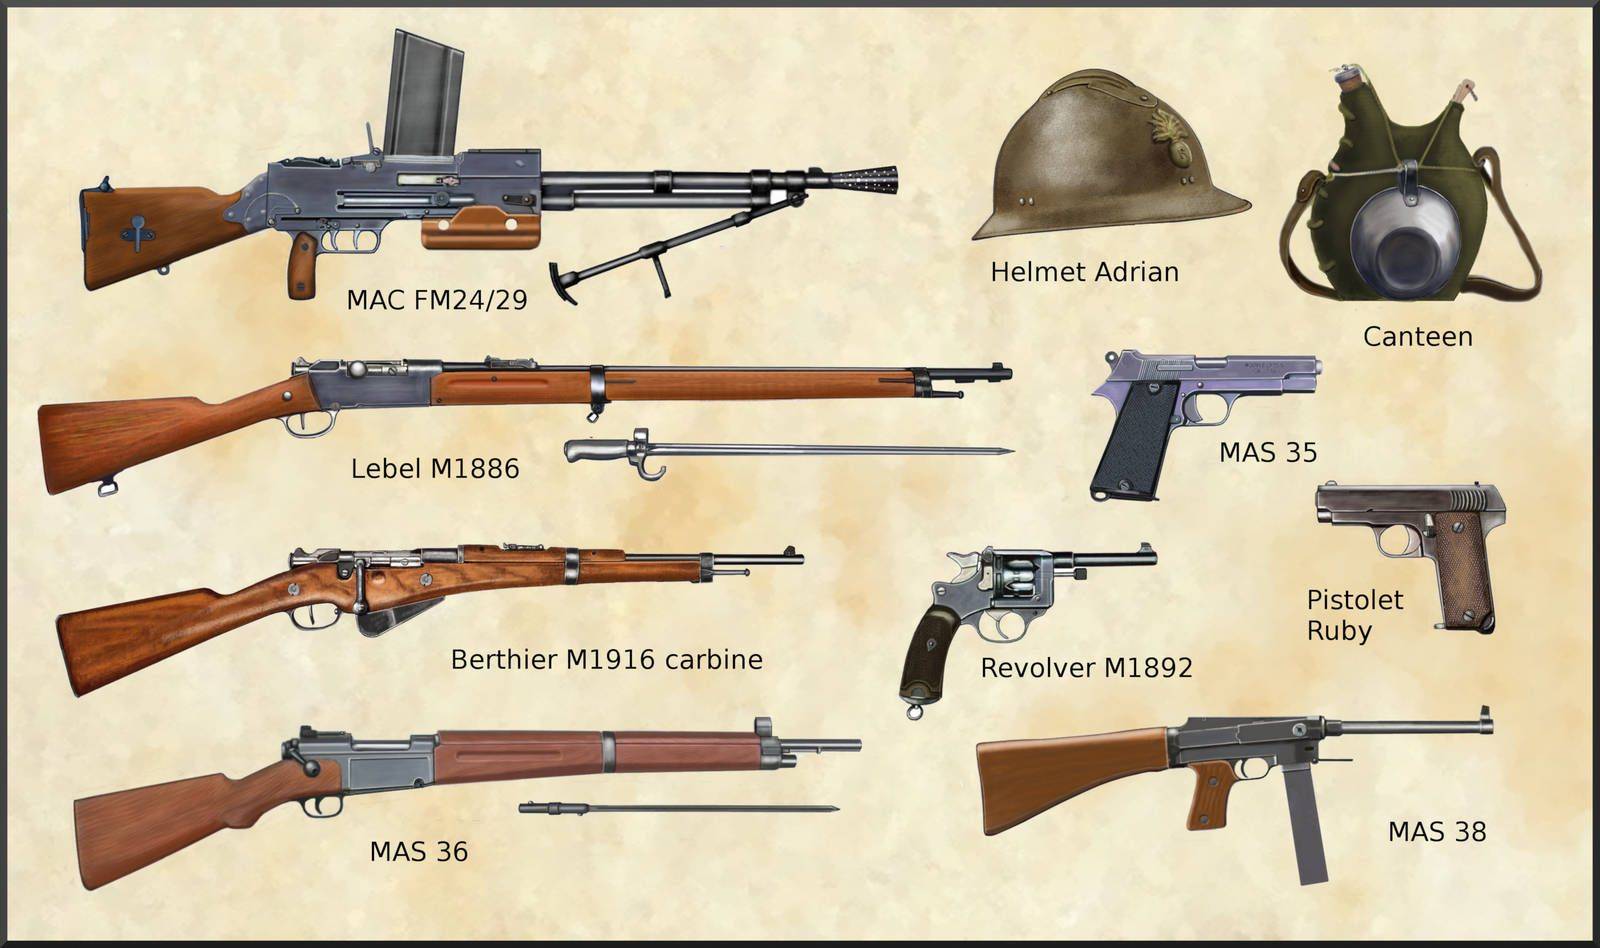 尤其是mas36,mas38这类紧凑的步枪,冲锋枪还挺顺应二战这类逐渐机械化